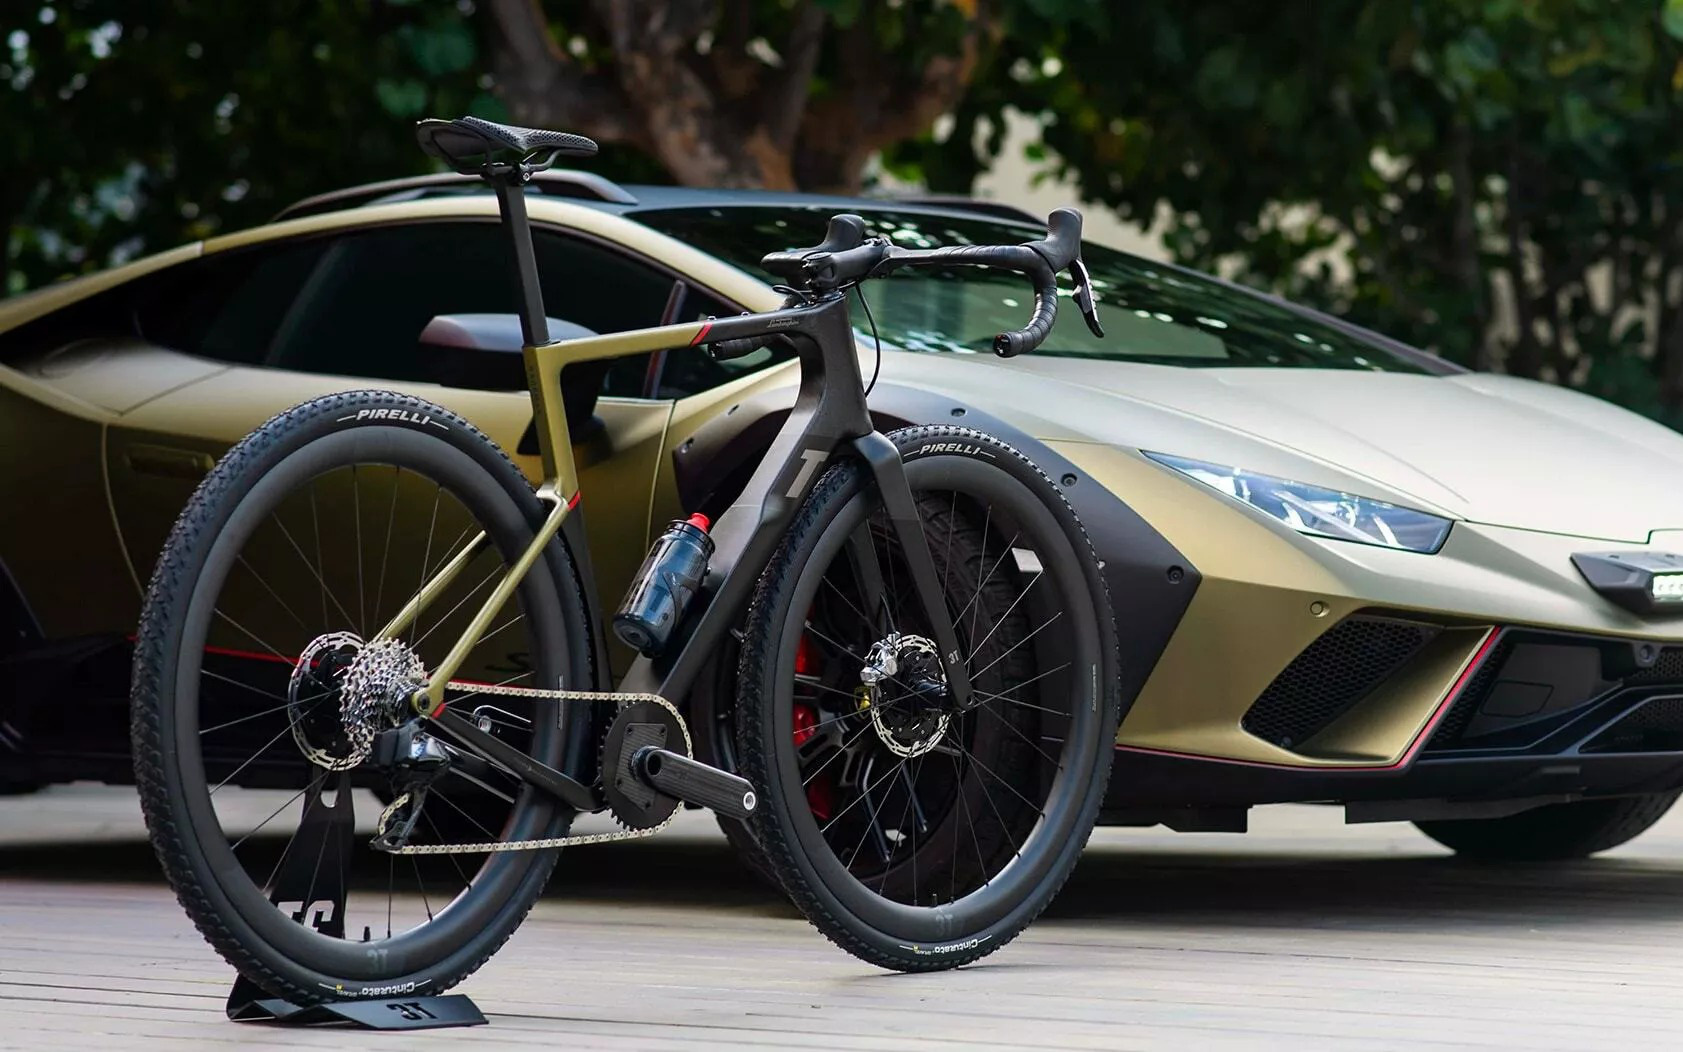 Lamborghini làm xe đạp, đắt ngang ô tô giá rẻ